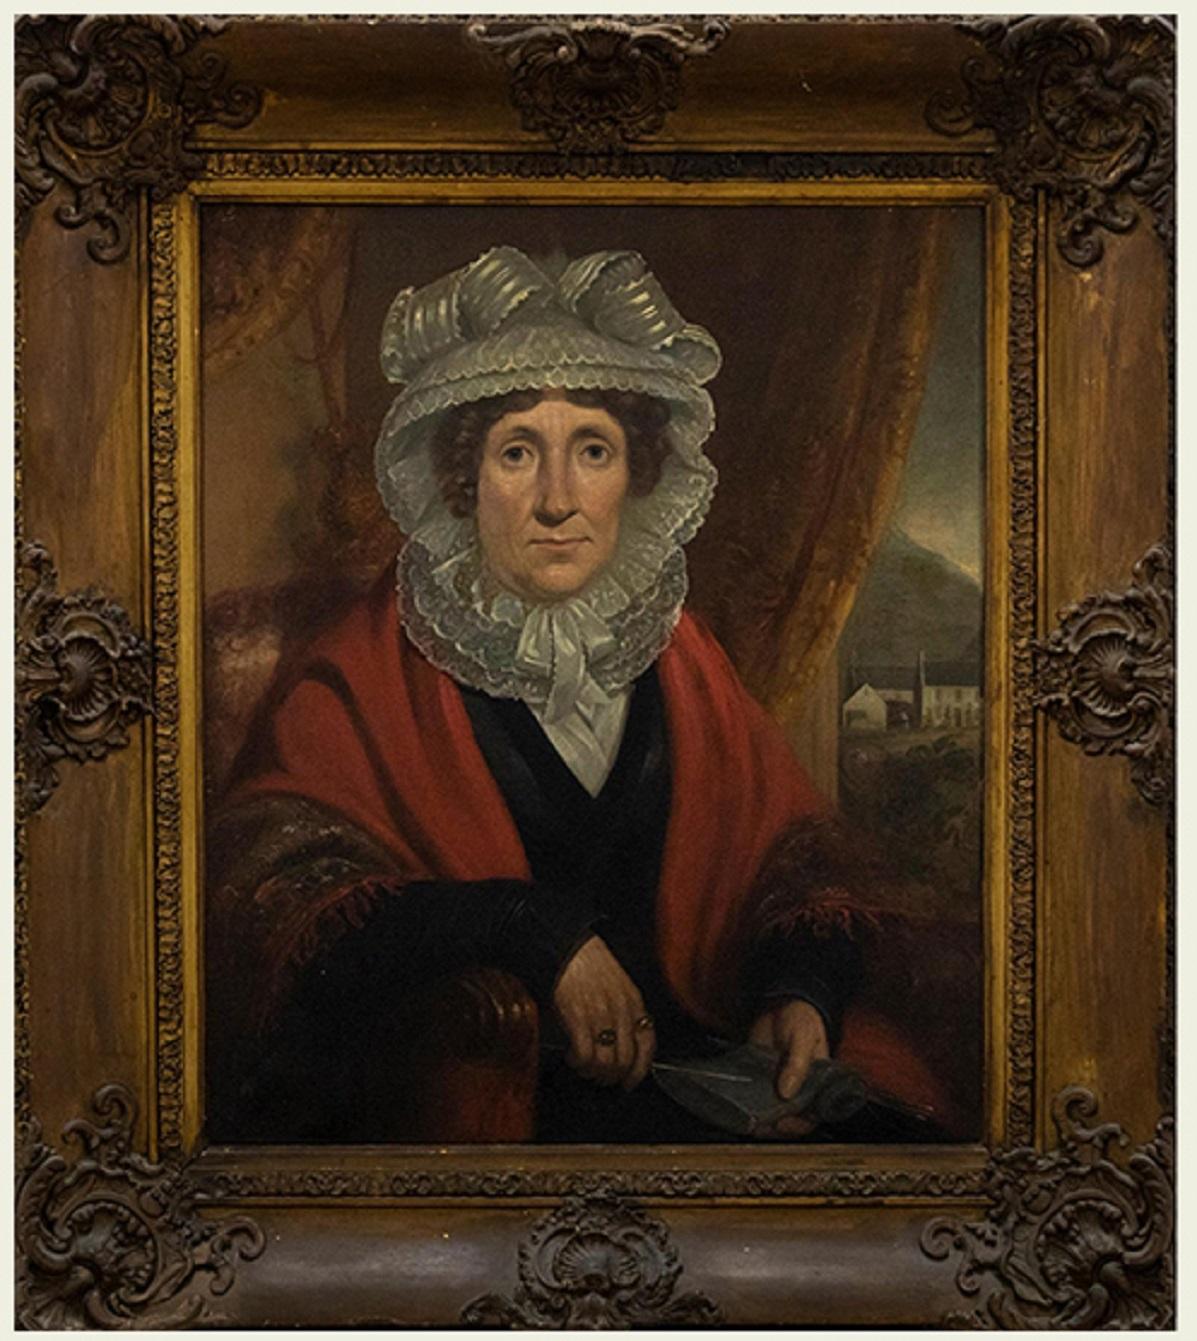 Ein wirklich einzigartiges und auffälliges Porträt aus dem 19. Jahrhundert, das eine auffällige Frau mit einem leuchtend roten Schal und einer kunstvollen Spitzenhaube zeigt. Der reiche Wandteppich an den Ärmeln ihres Schals, die zarte Spitzenarbeit